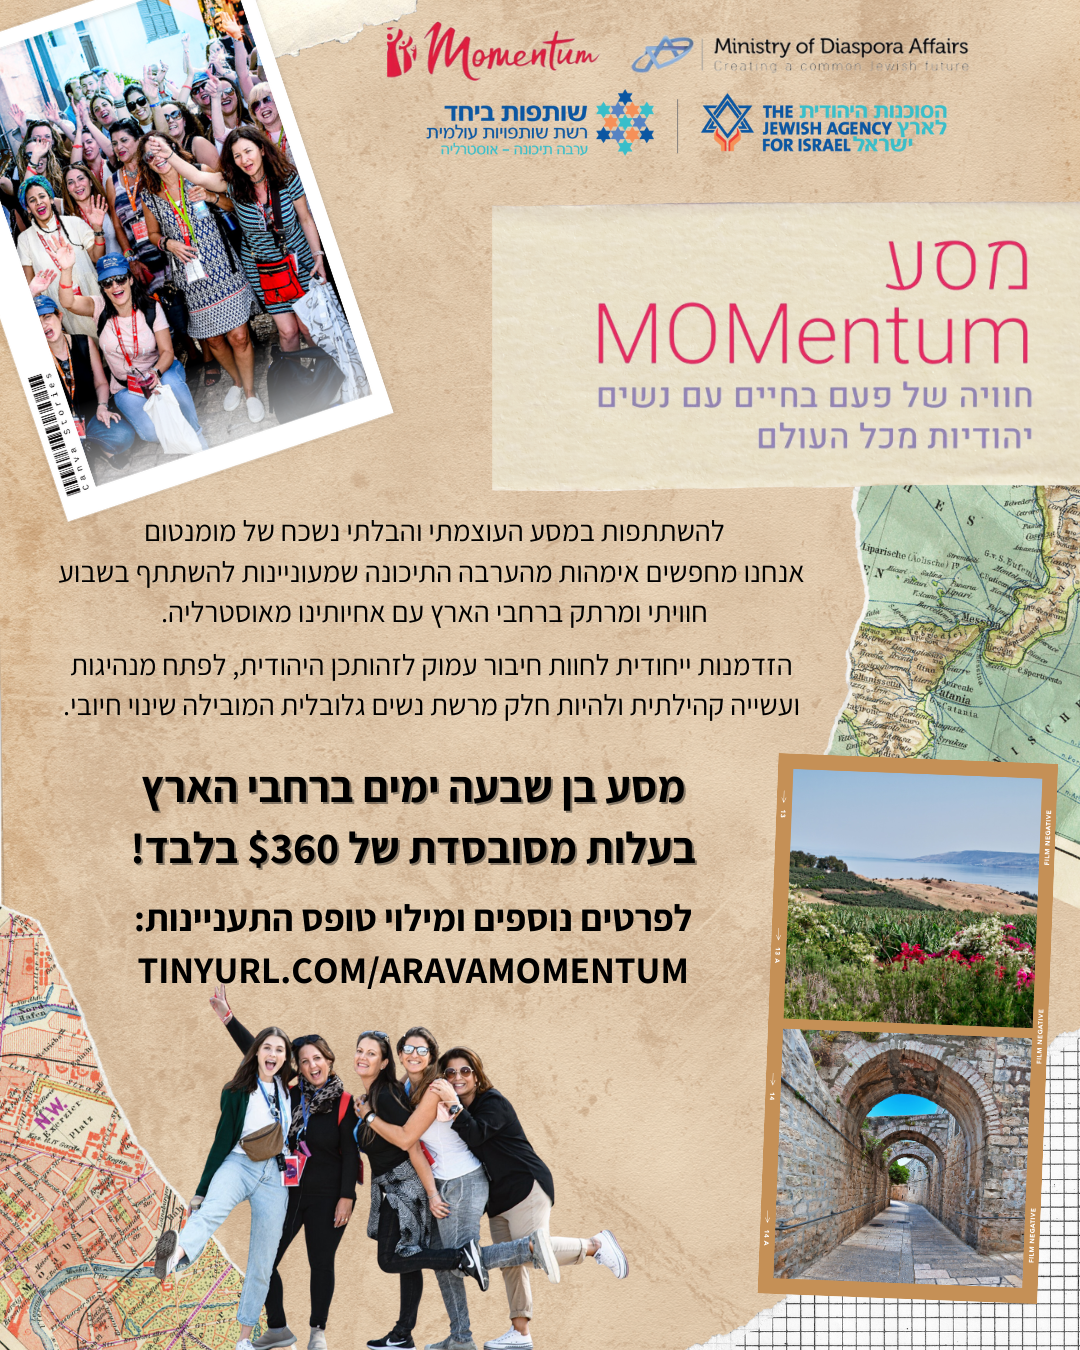 מסע מומנטום -שותפות ערבה אוסטרליה - הזמנות מיוחדת לאימהות מהערבה להצטרף למסע ברחבי הארץ ביחד עם נשים מהקהילה היהודית באוסטרליה, בעלות מסובסדת מאוד.